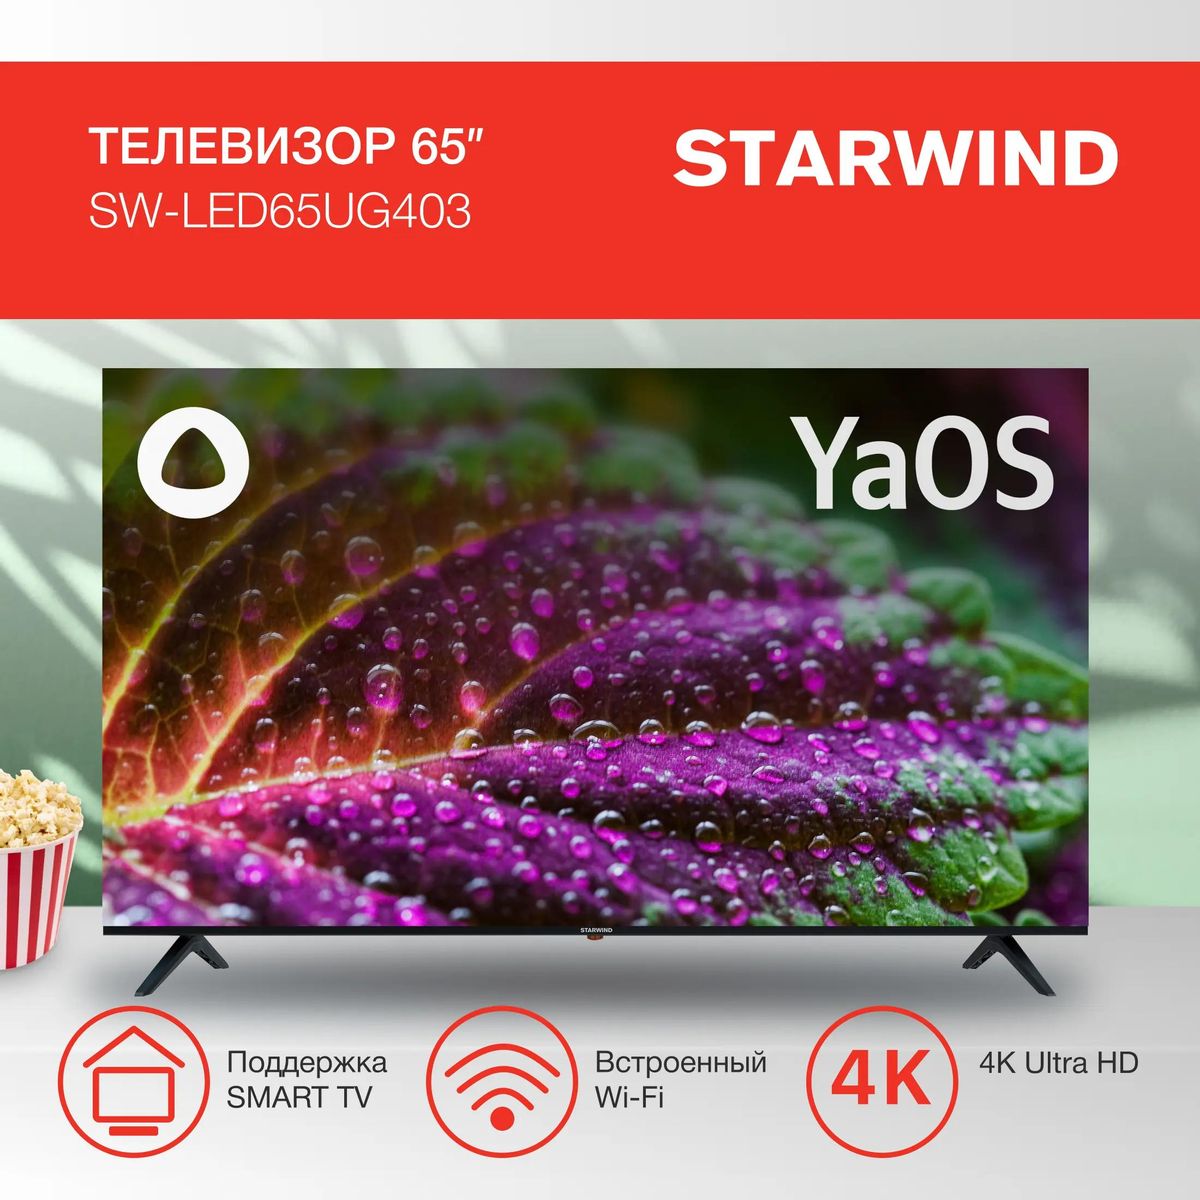 65" Телевизор StarWind SW-LED65UG403, 4K Ultra HD, черный, СМАРТ ТВ, YaOS